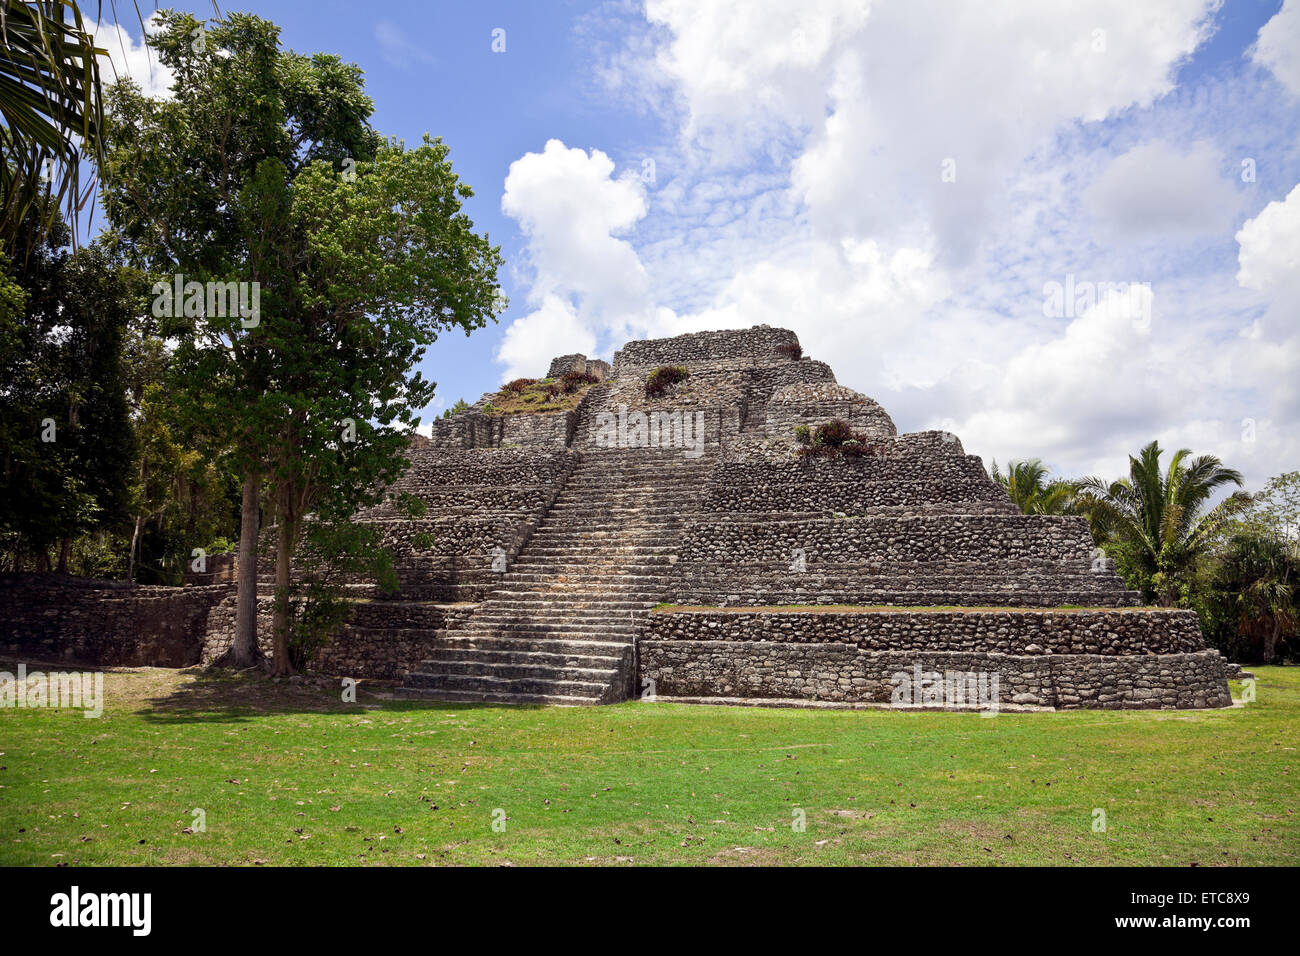 Ein beliebter Tagesausflug für Kreuzfahrt-Passagiere, Chacchoben an der mexikanischen Riviera wurde von den Maya schon 200 v. Chr. besiedelt. Stockfoto